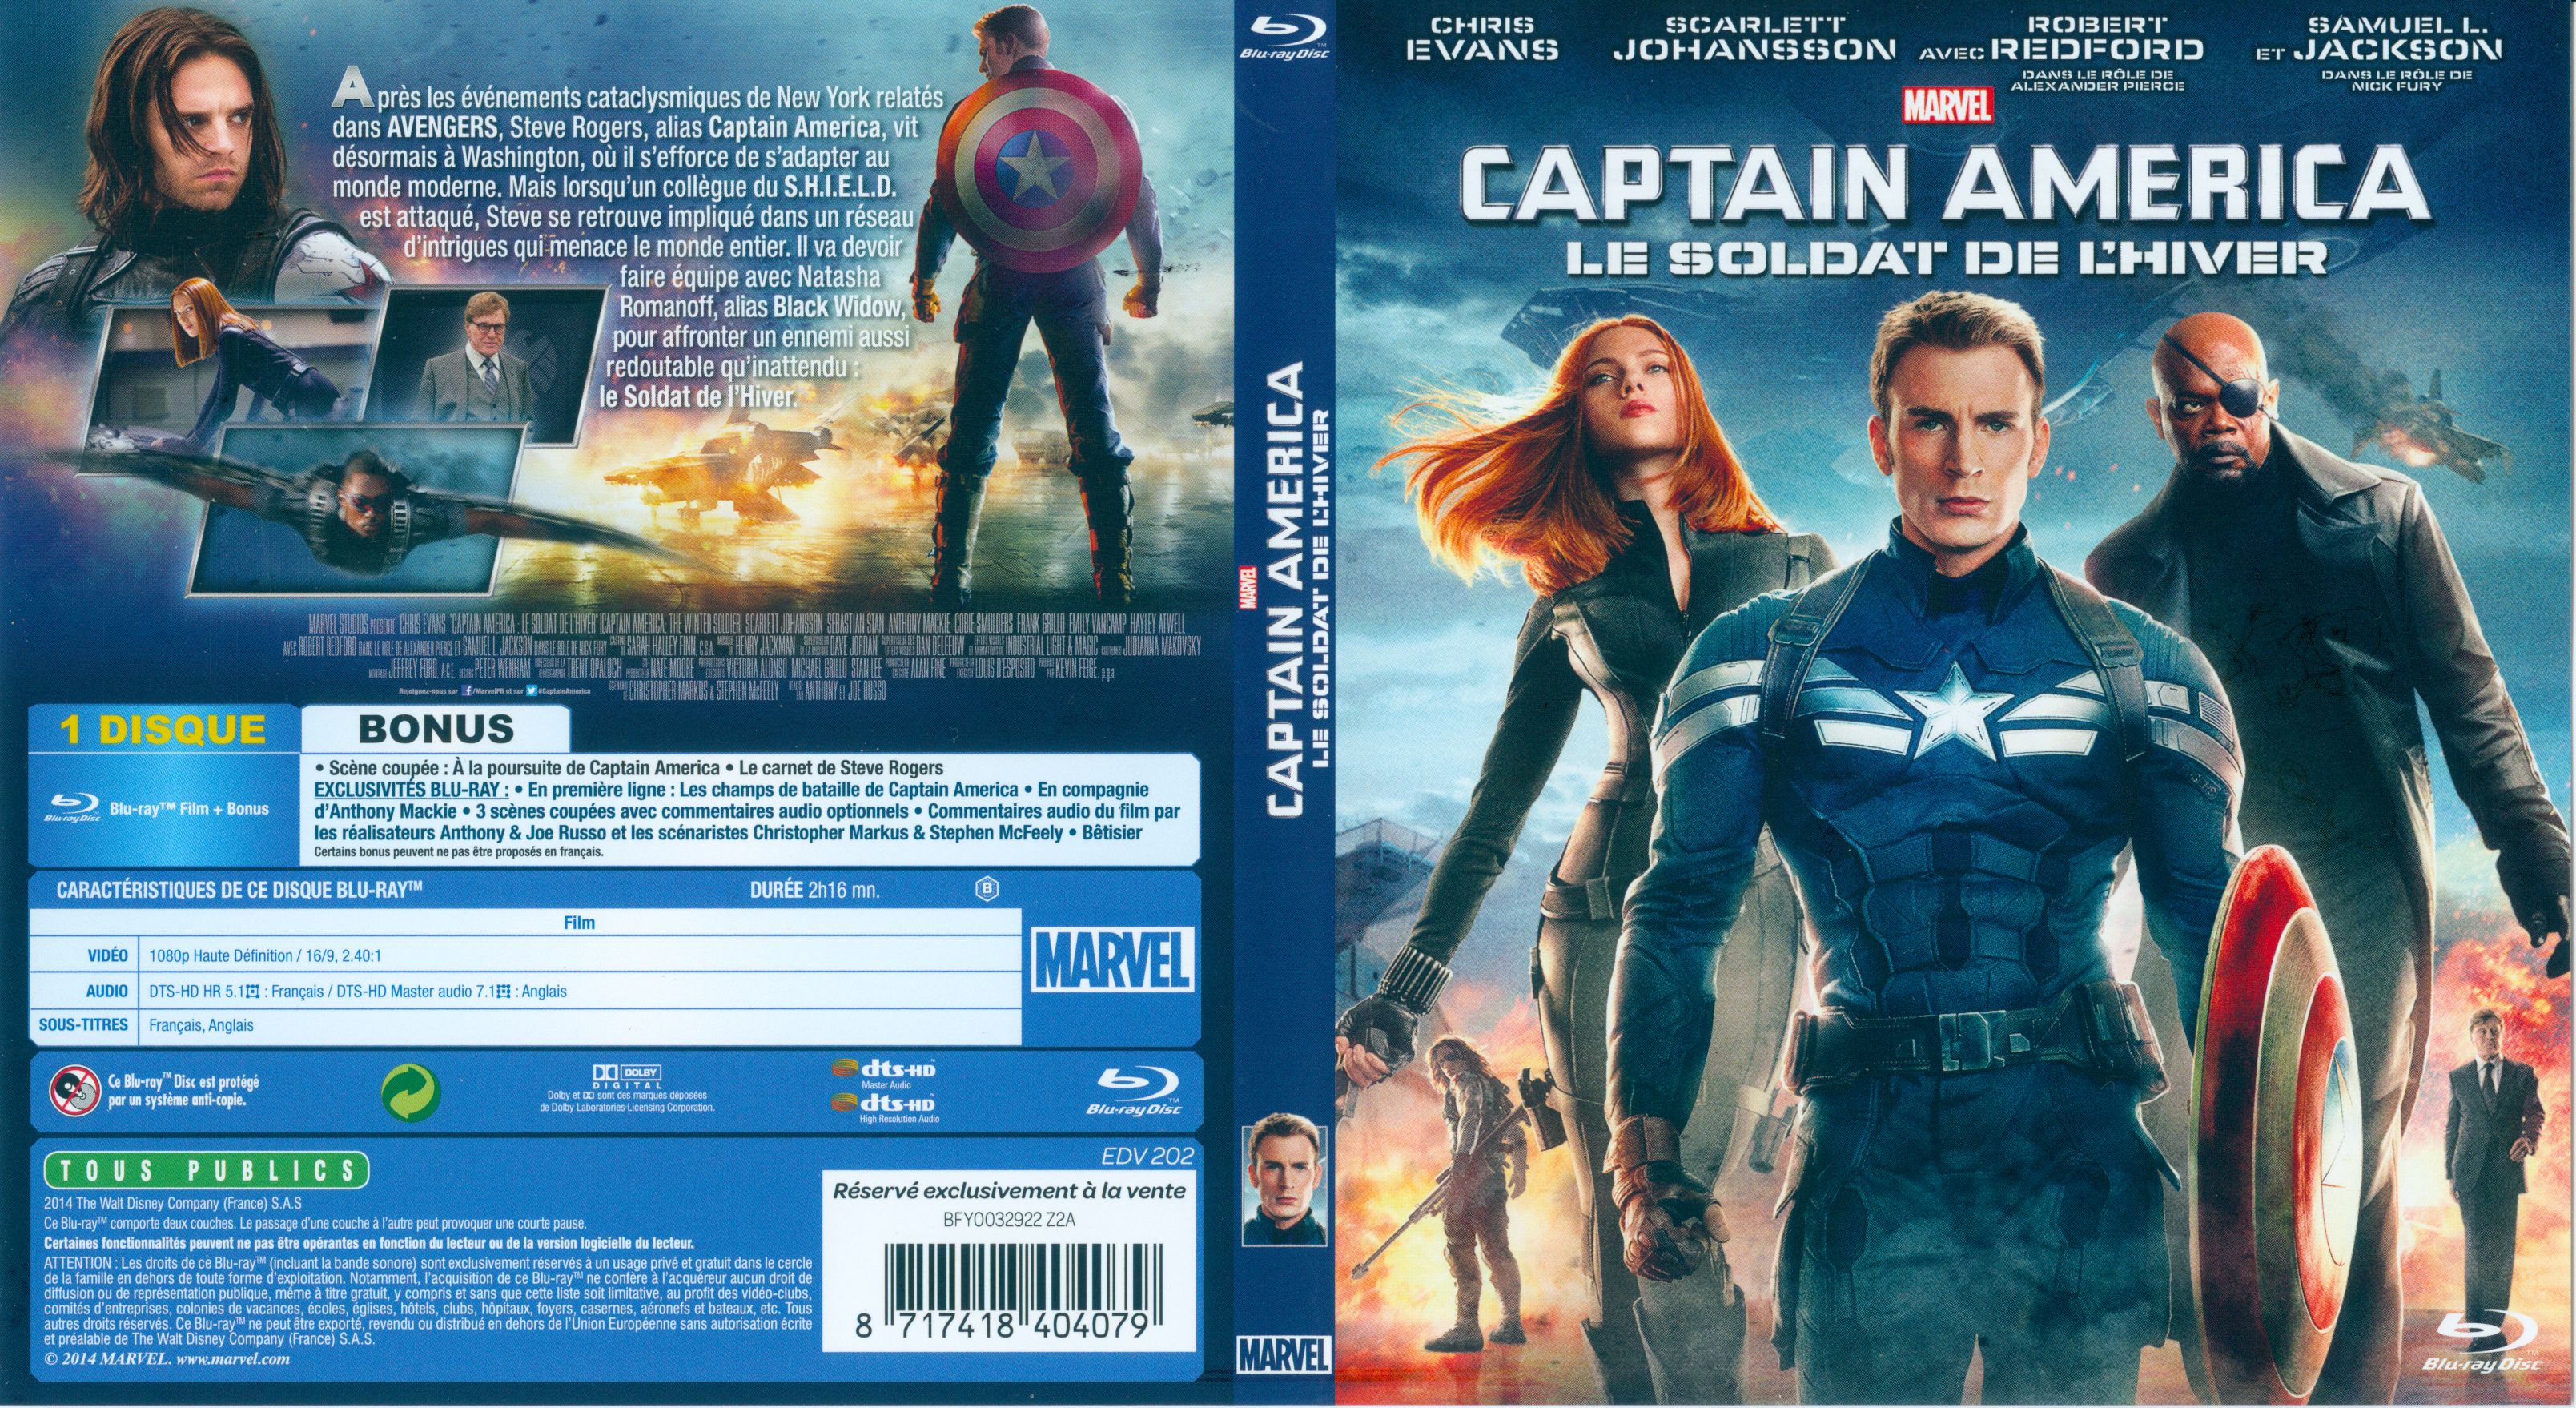 Jaquette DVD Captain America, le soldat de l